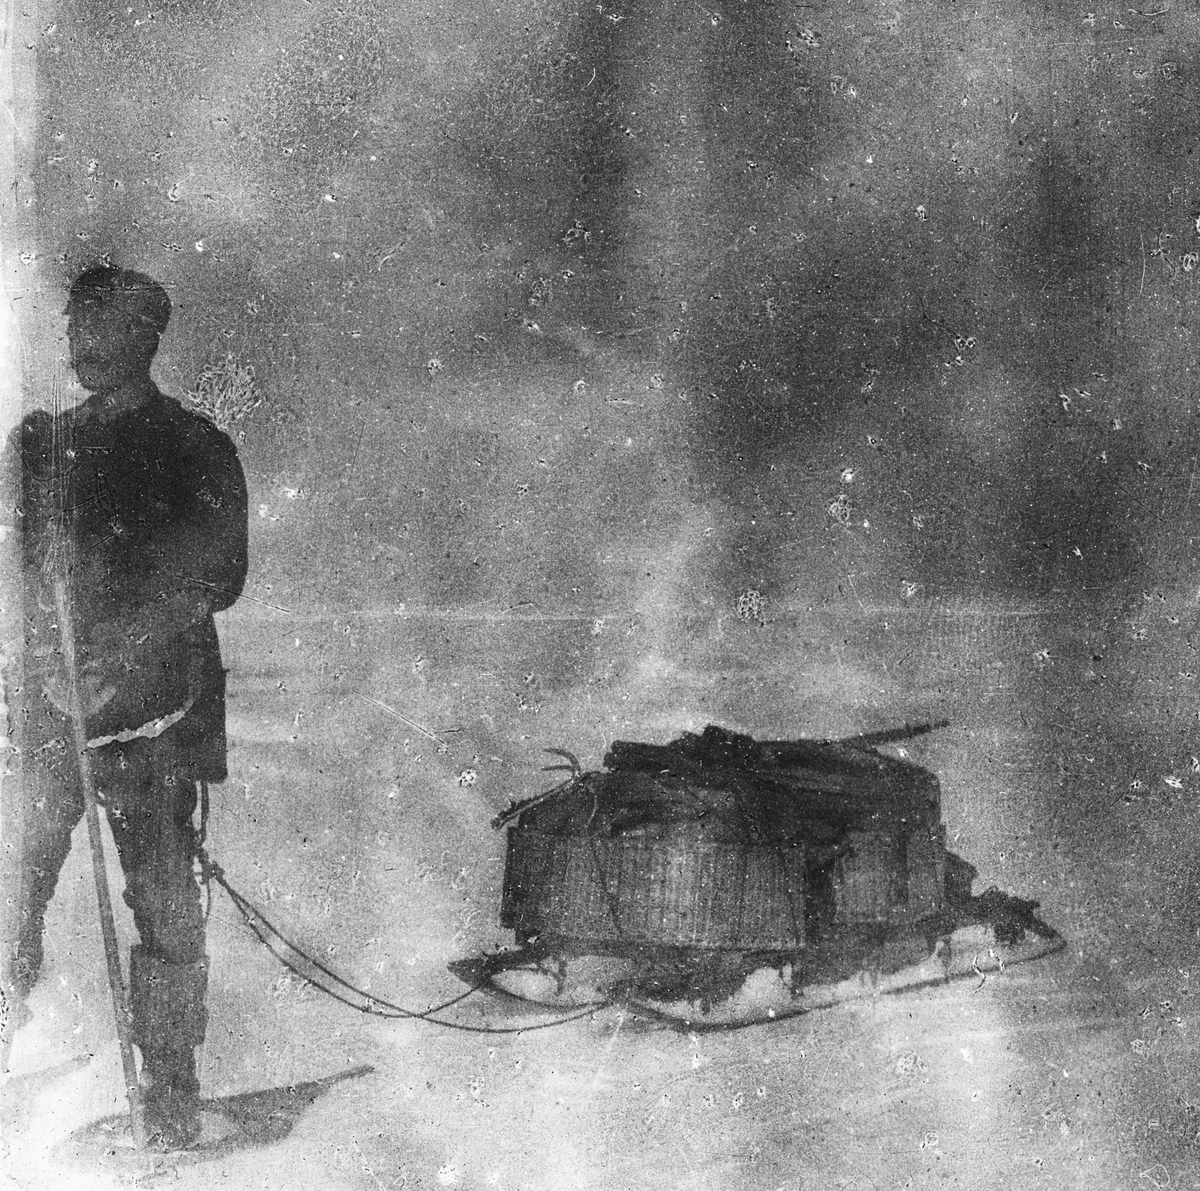 Nils Strindberg med lastad kälke under isvandandringen. Detta är enda tillfället då snöskorna syns i bruk. Framtagning av bilderna gjordes av docent John Hertzberg år 1930 på Fotografi, Tekniska Högskolan.